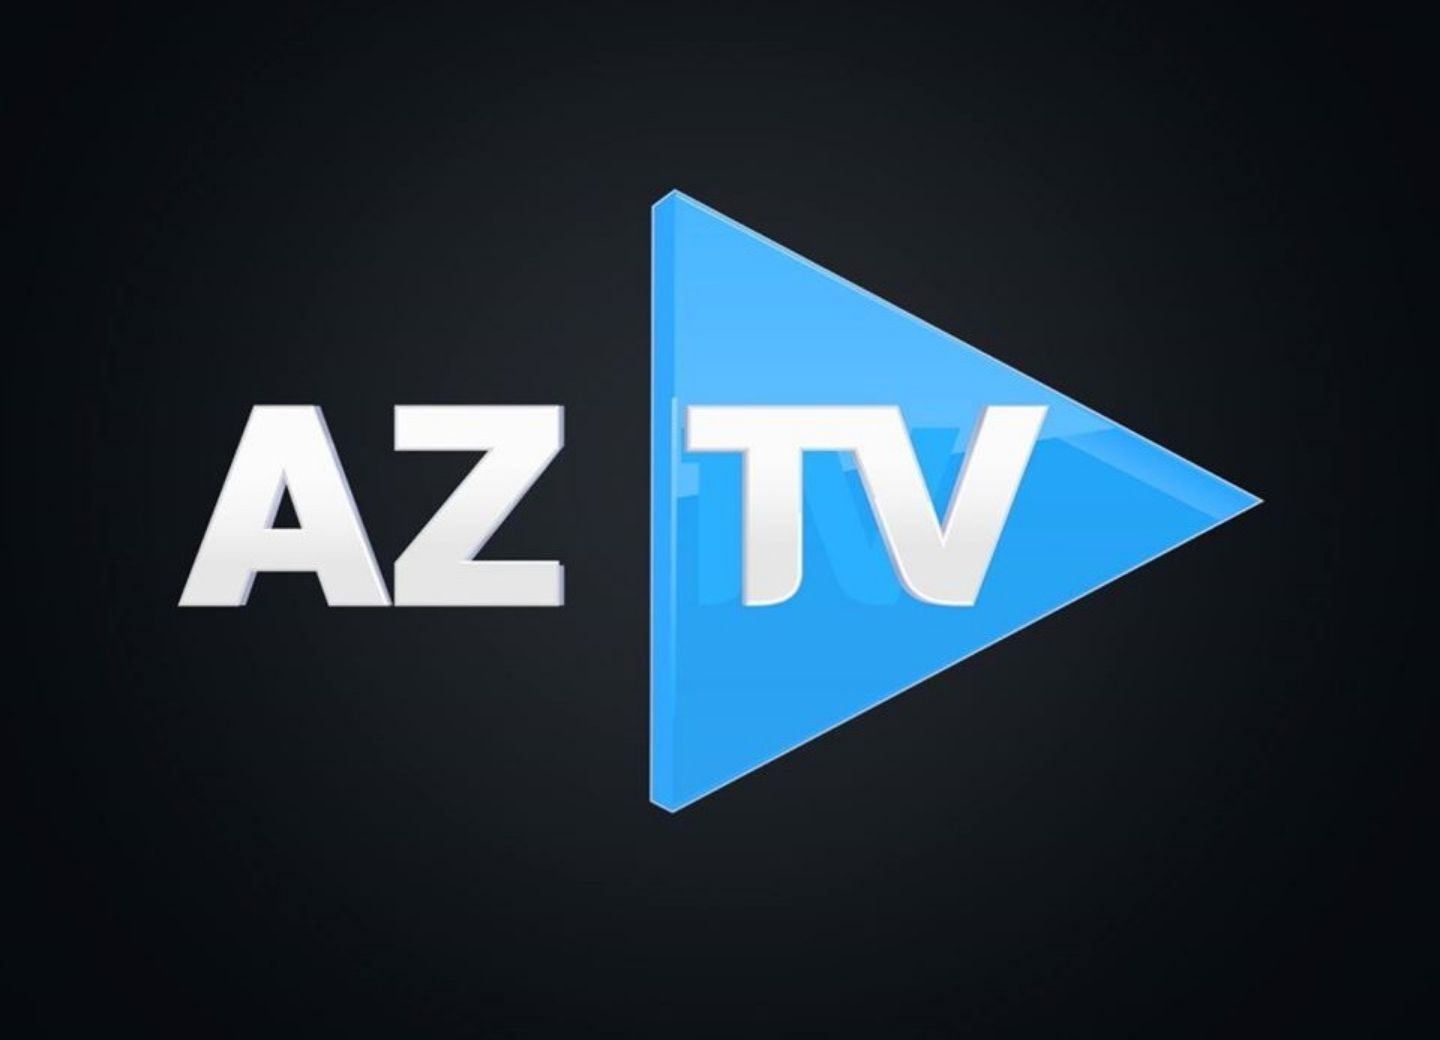 AZTV Ukraynanın xarici televiziya və radio yayımlarının proqramları siyahısına DAXİL EDİLDİ  